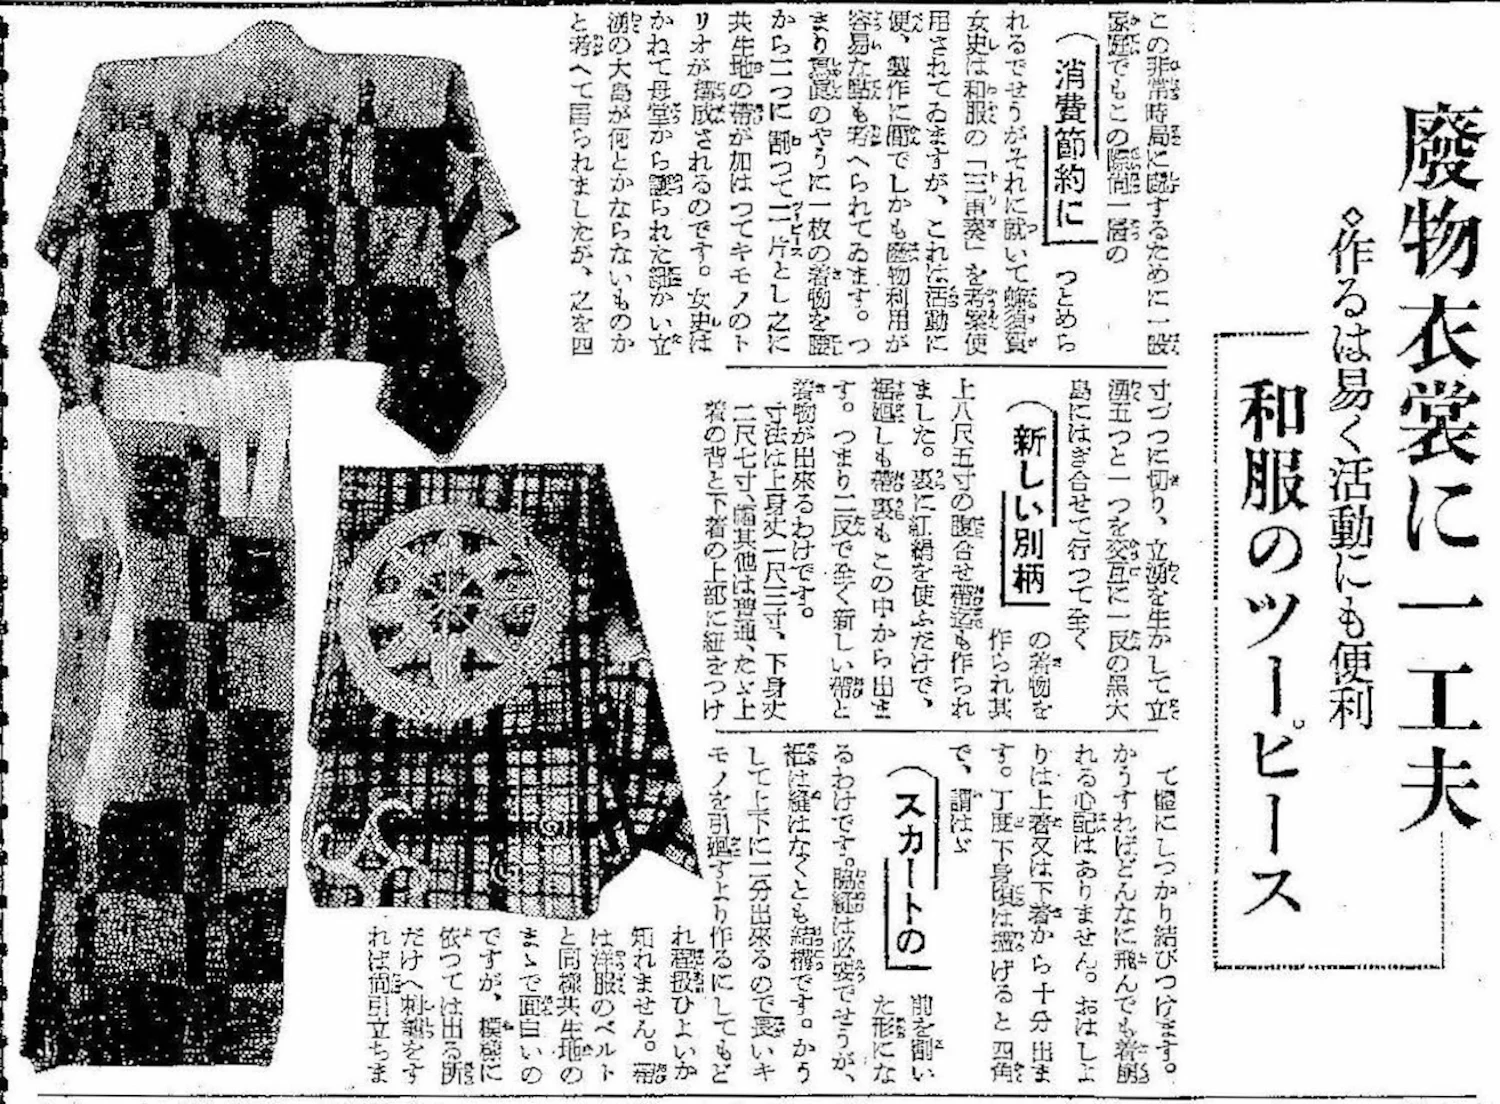 【図1】『朝日新聞』1937年8月20日朝刊10頁。